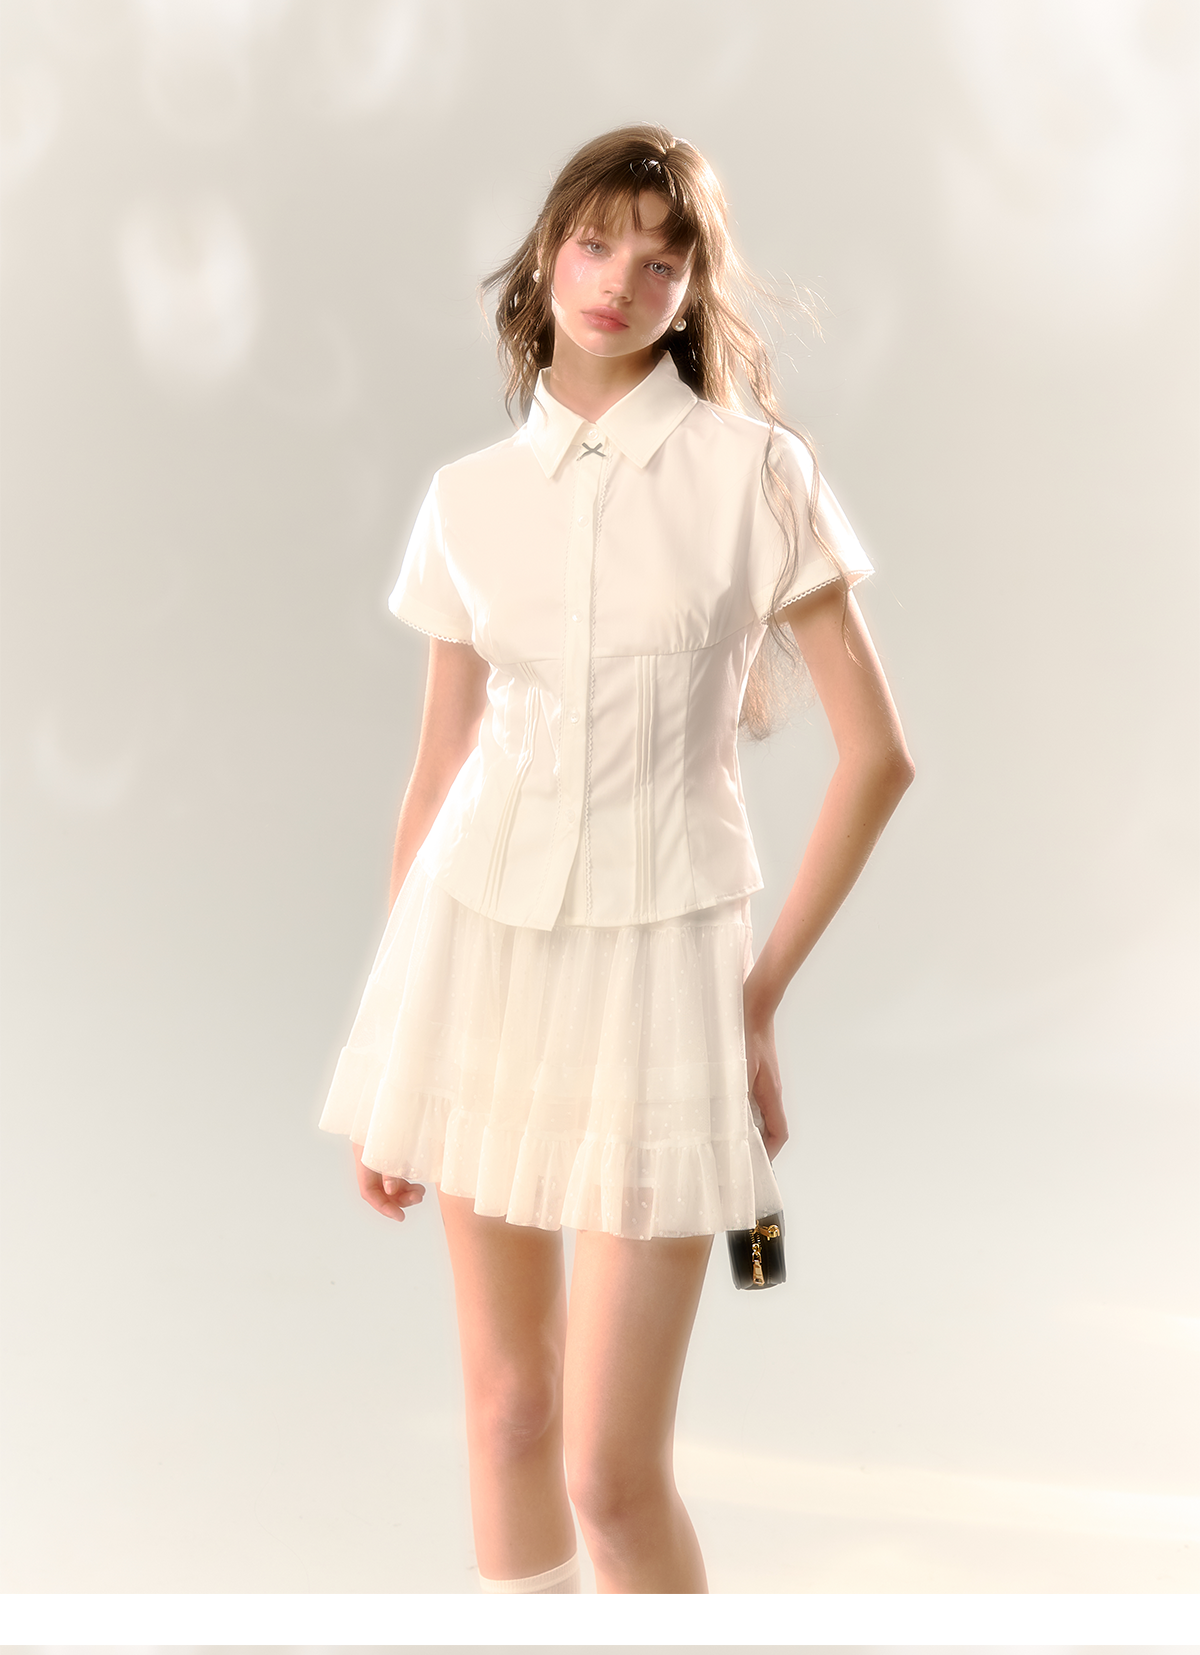 White A-line Mini Skirt - CHINASQUAD